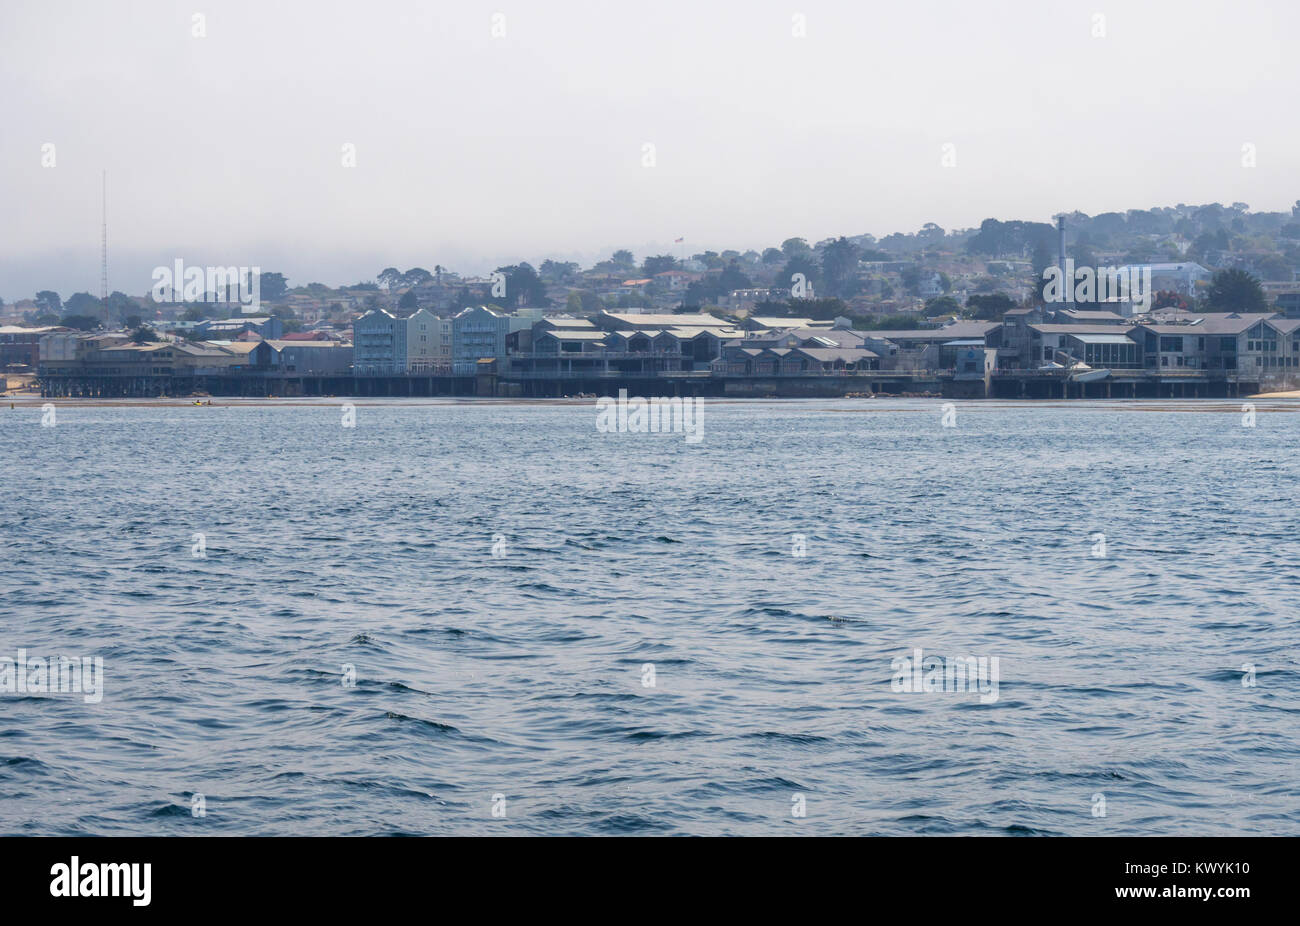 Monterey, CA - 12 août 2016 : La vue de l'océan Pacifique sur le quartier historique de Cannery Row de Monterey, Californie (USA). Banque D'Images